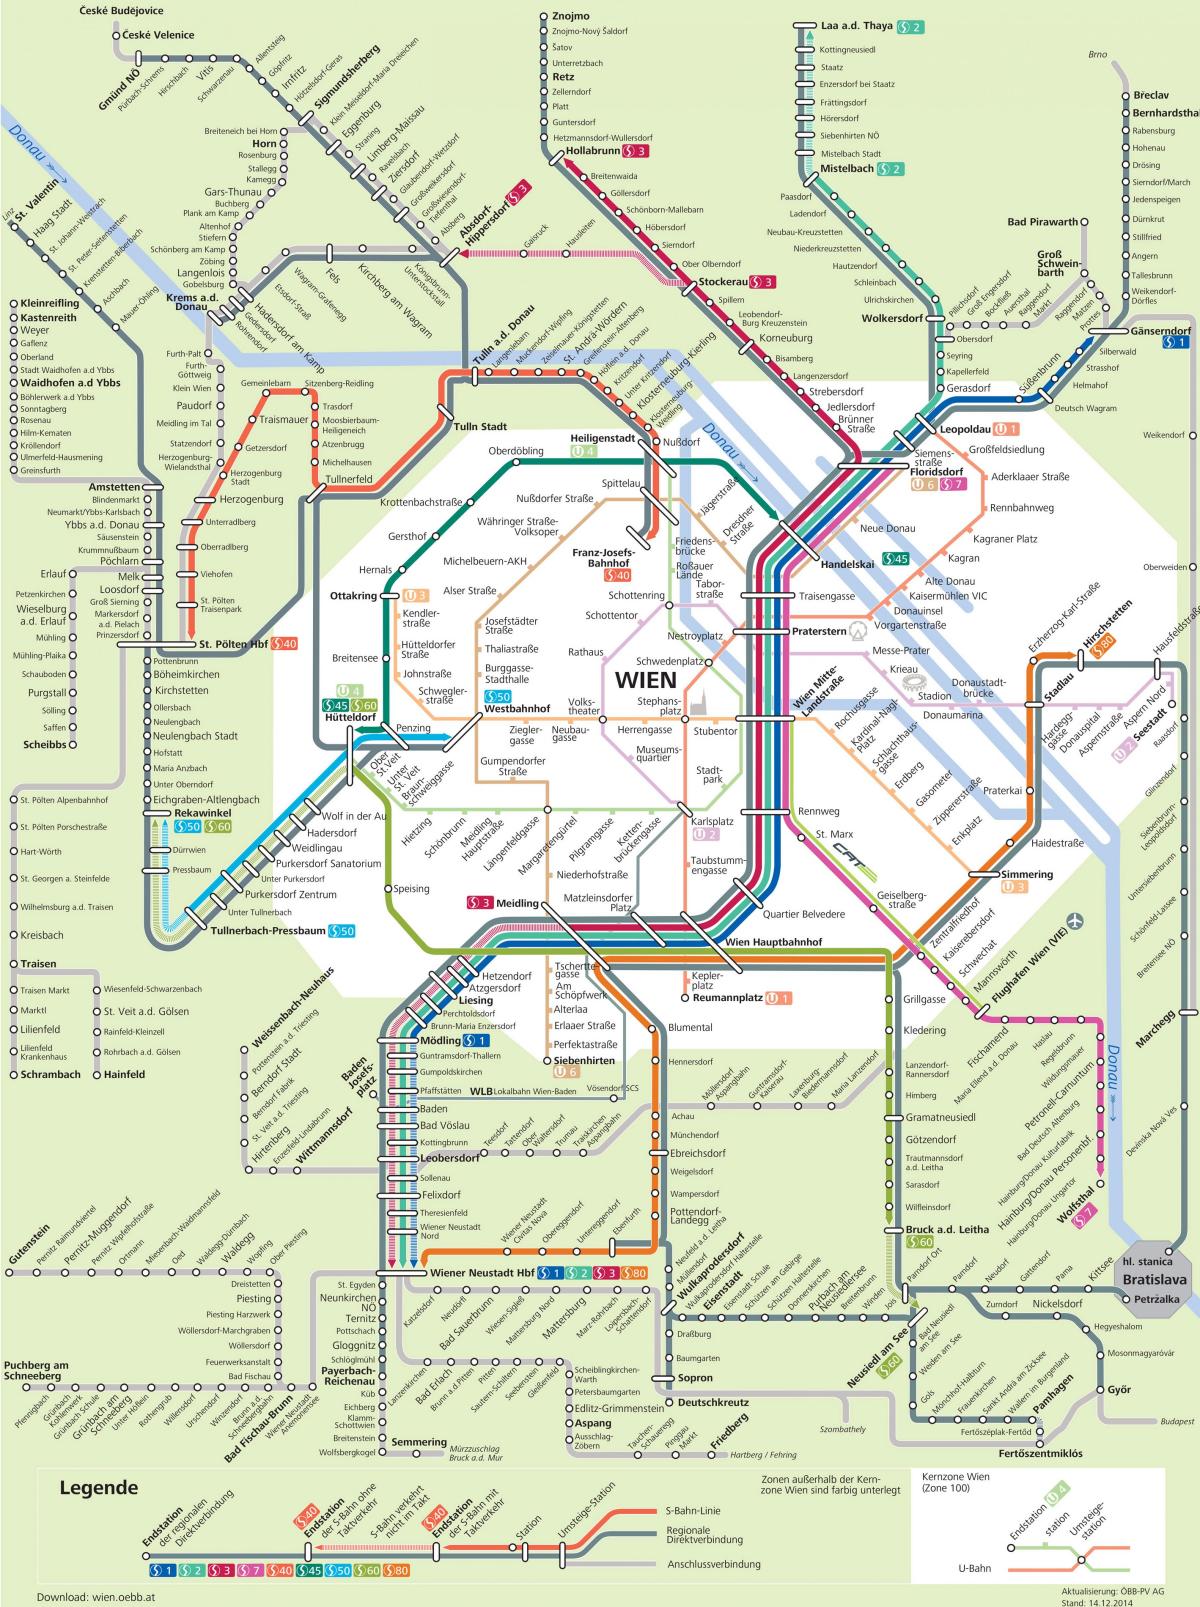 Mapa de Viena s7 ruta